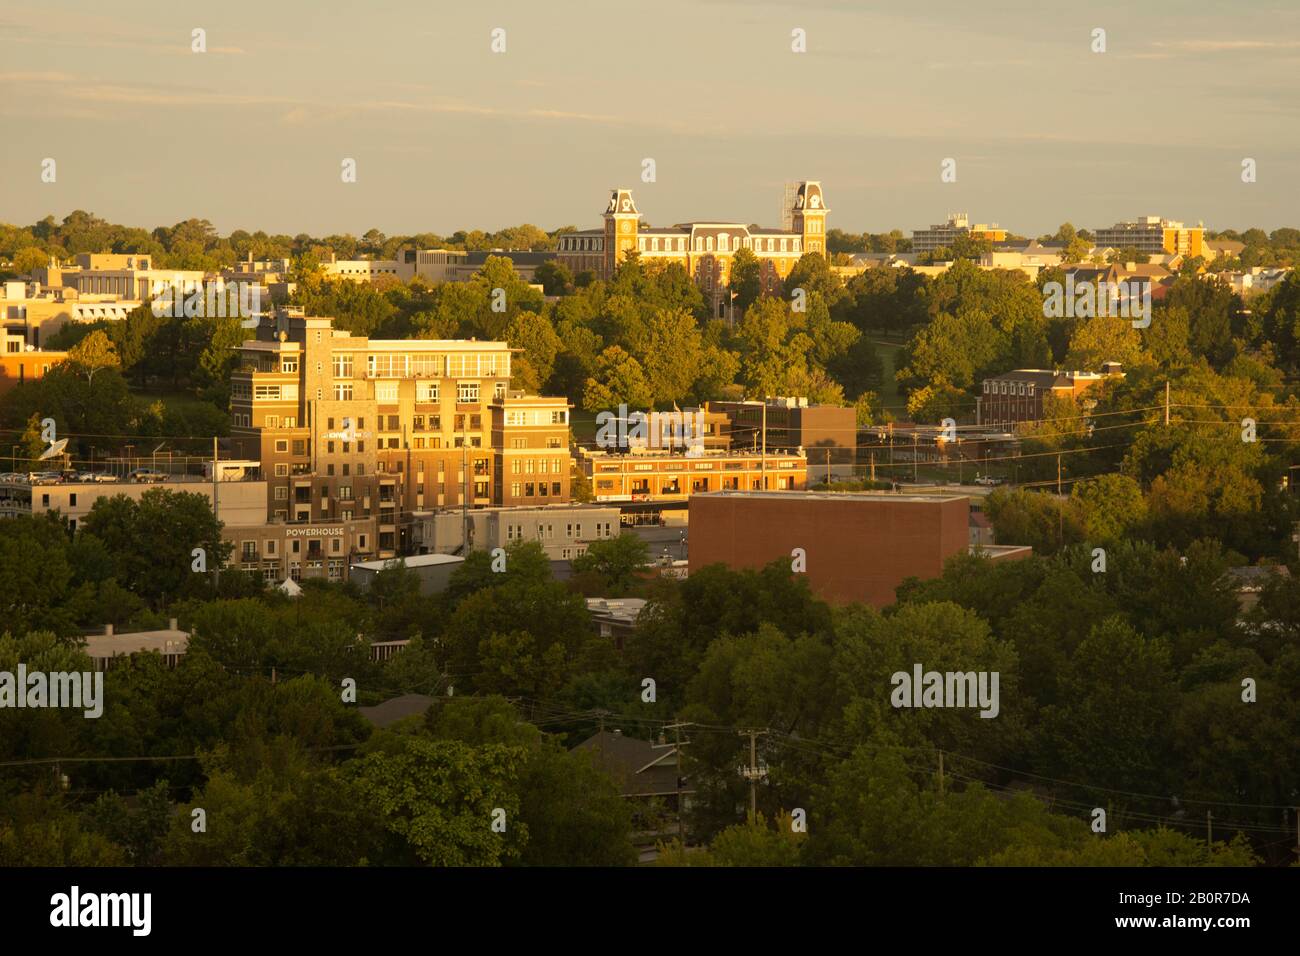 Vue de dessus de l'université d'Arkansas au lever du soleil, Fayetteville, Arkansas, États-Unis Banque D'Images